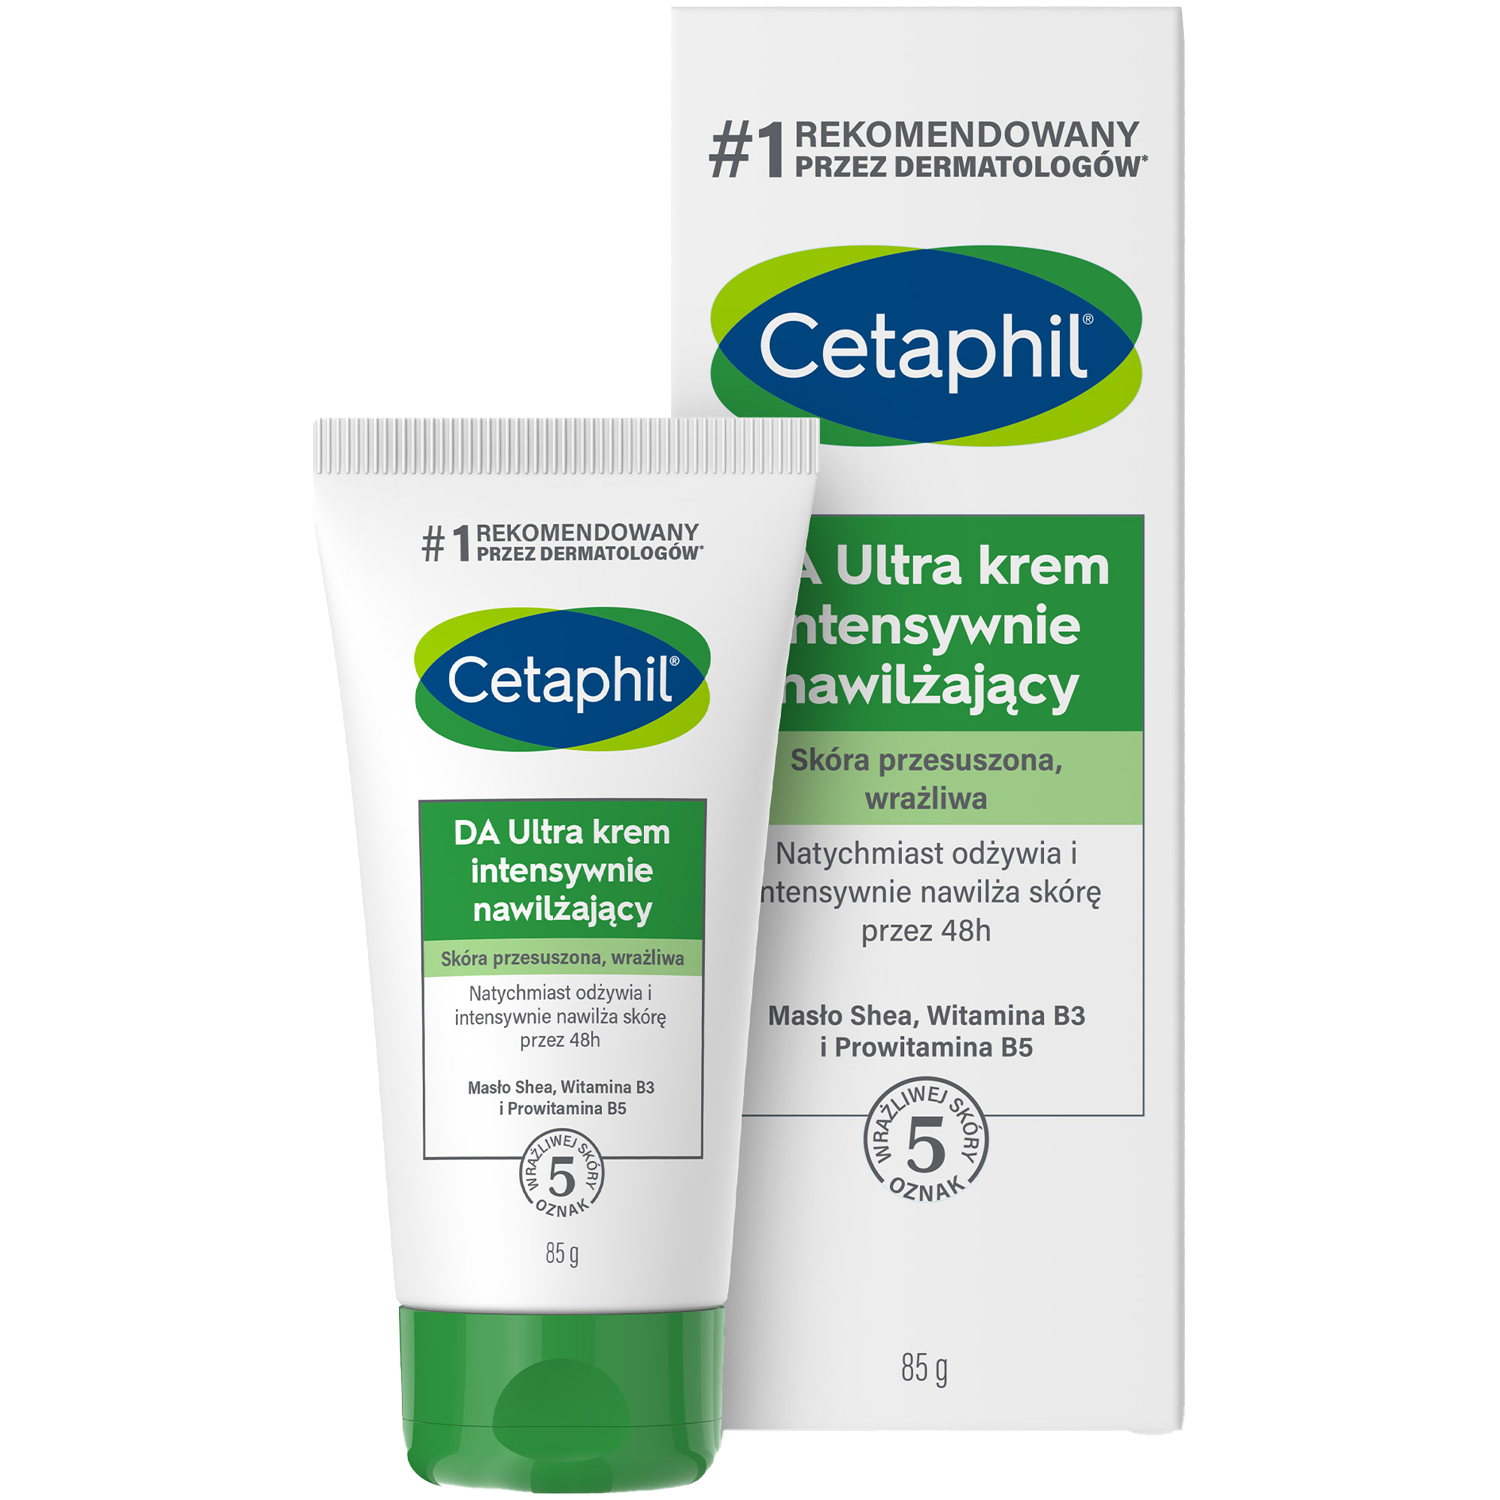 Cetaphil DA Ultra krem intensywnie nawilżający do twarzy, 85 g | hebe.pl